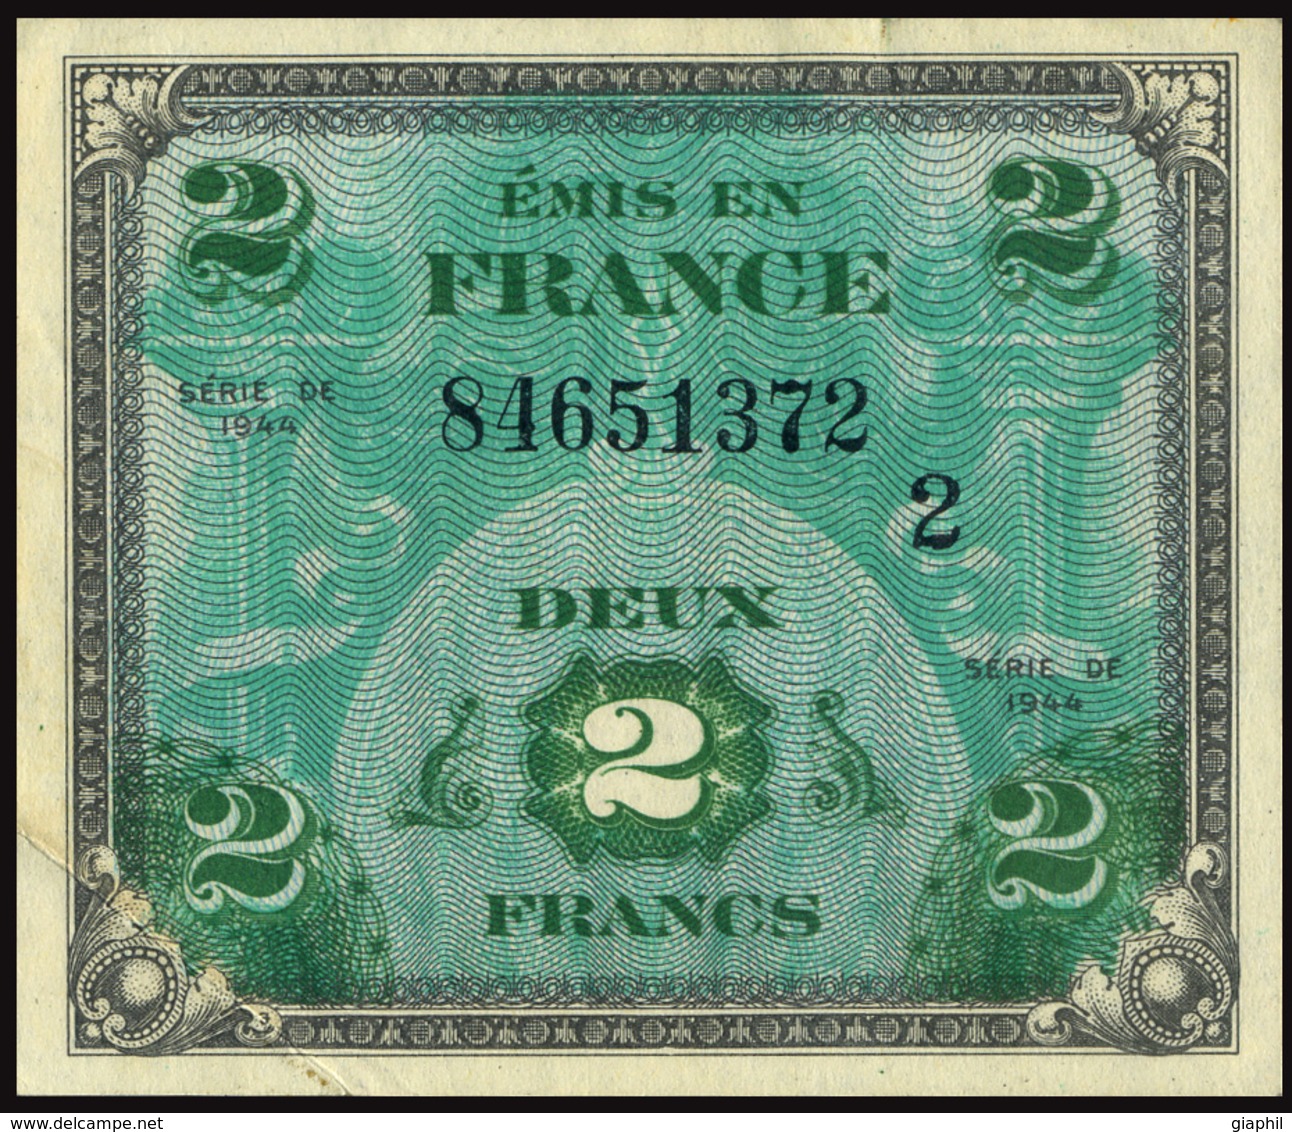 FRANCE 1944 DRAPEAU/FRANCE - 2 FRANCS OFFER!!! - 1944 Drapeau/Francia